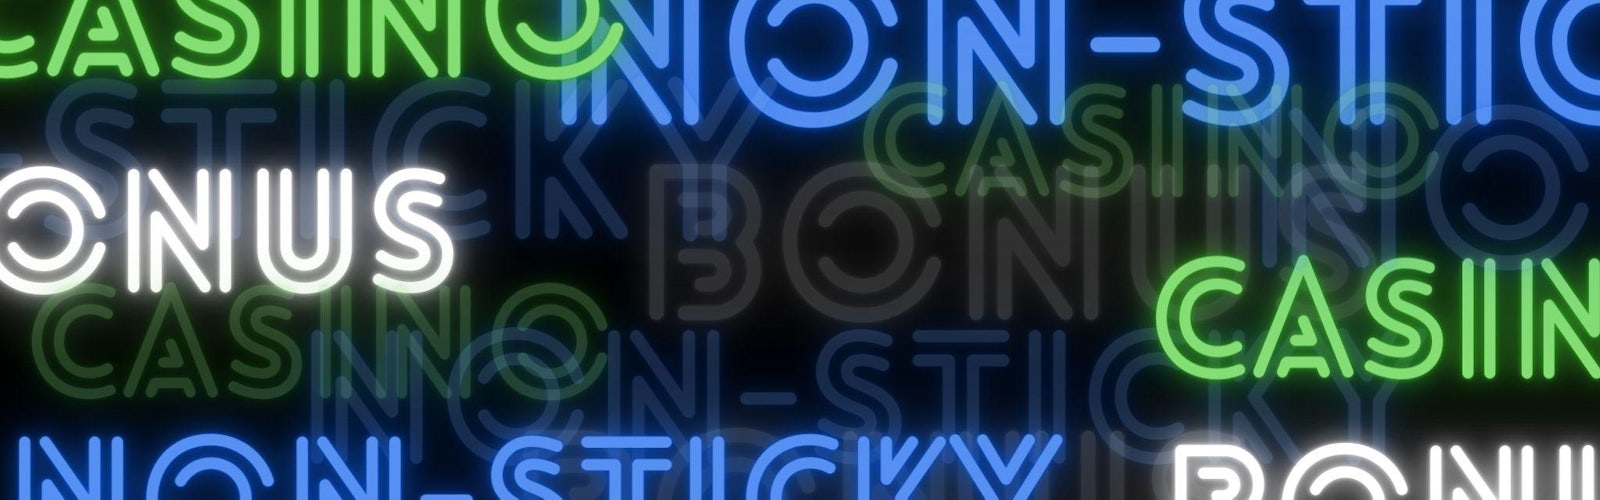 黒色の背景に、青や緑、白色のネオン系のフォントでNon-sticky bonusというテキストが散りばめられている様